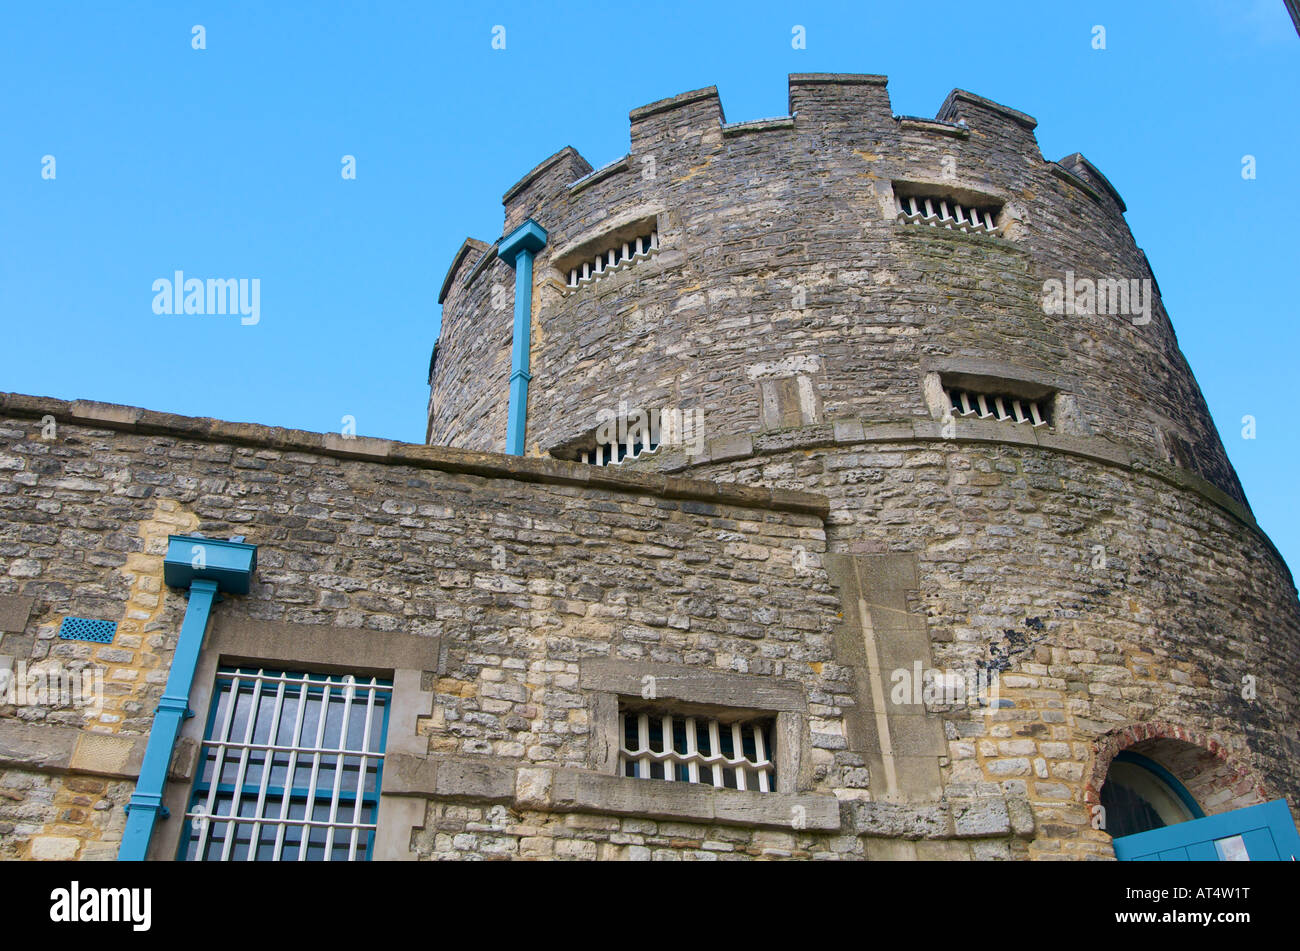 Oxford Prison Hotel set in Oxford Castle development Stock Photo